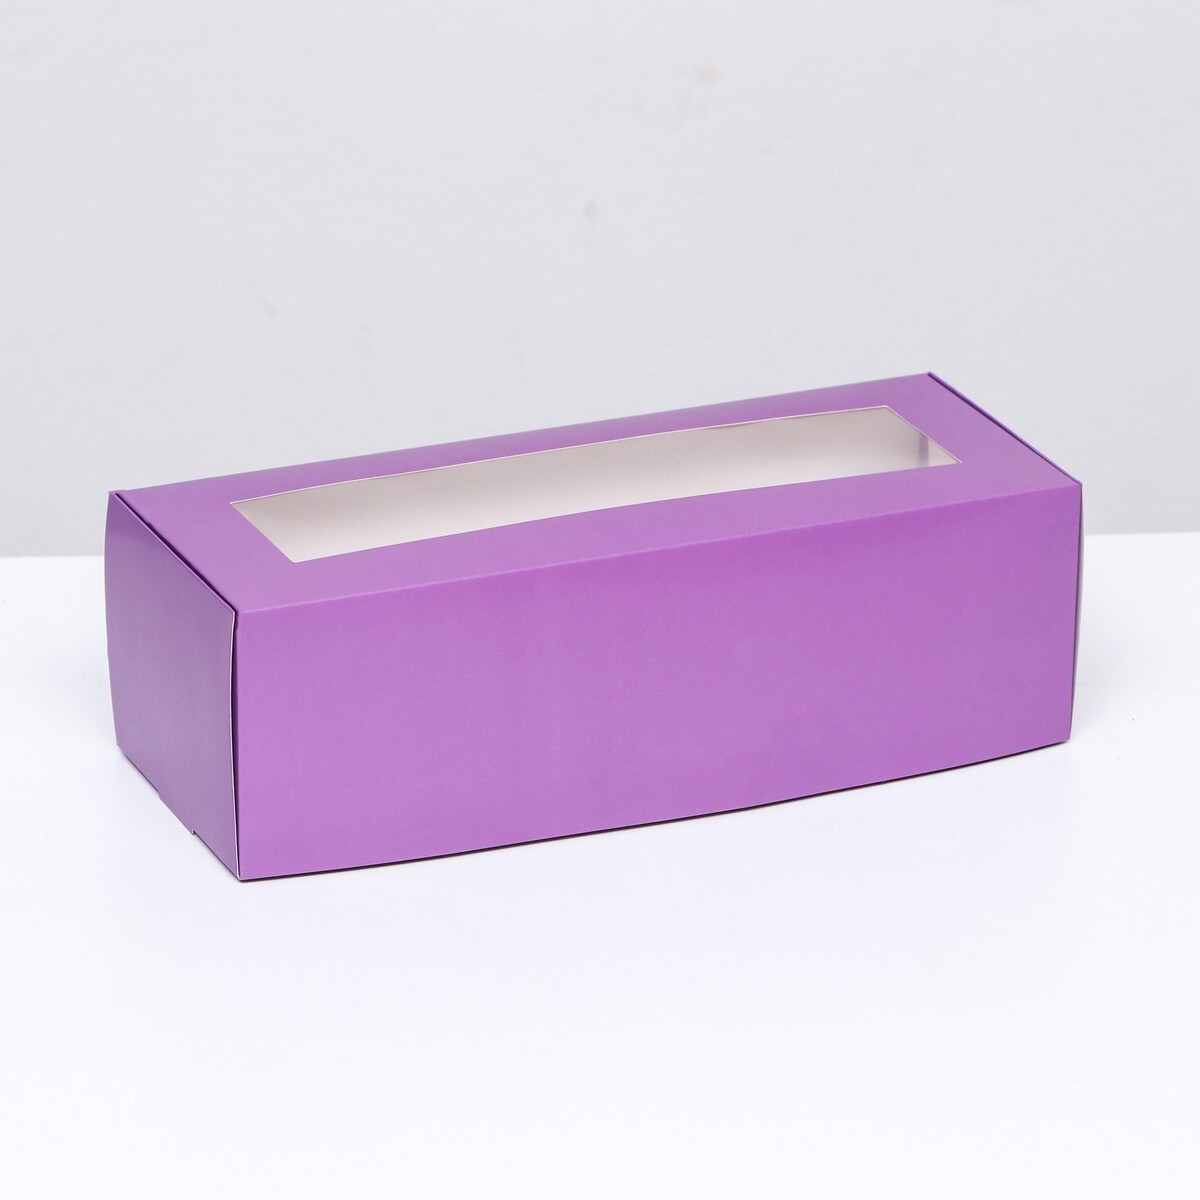 Коробка складная с окном под рулет, сиреневая, 26 х 10 х 8 см коробка под рулет белая 30 х 12 х 12 см